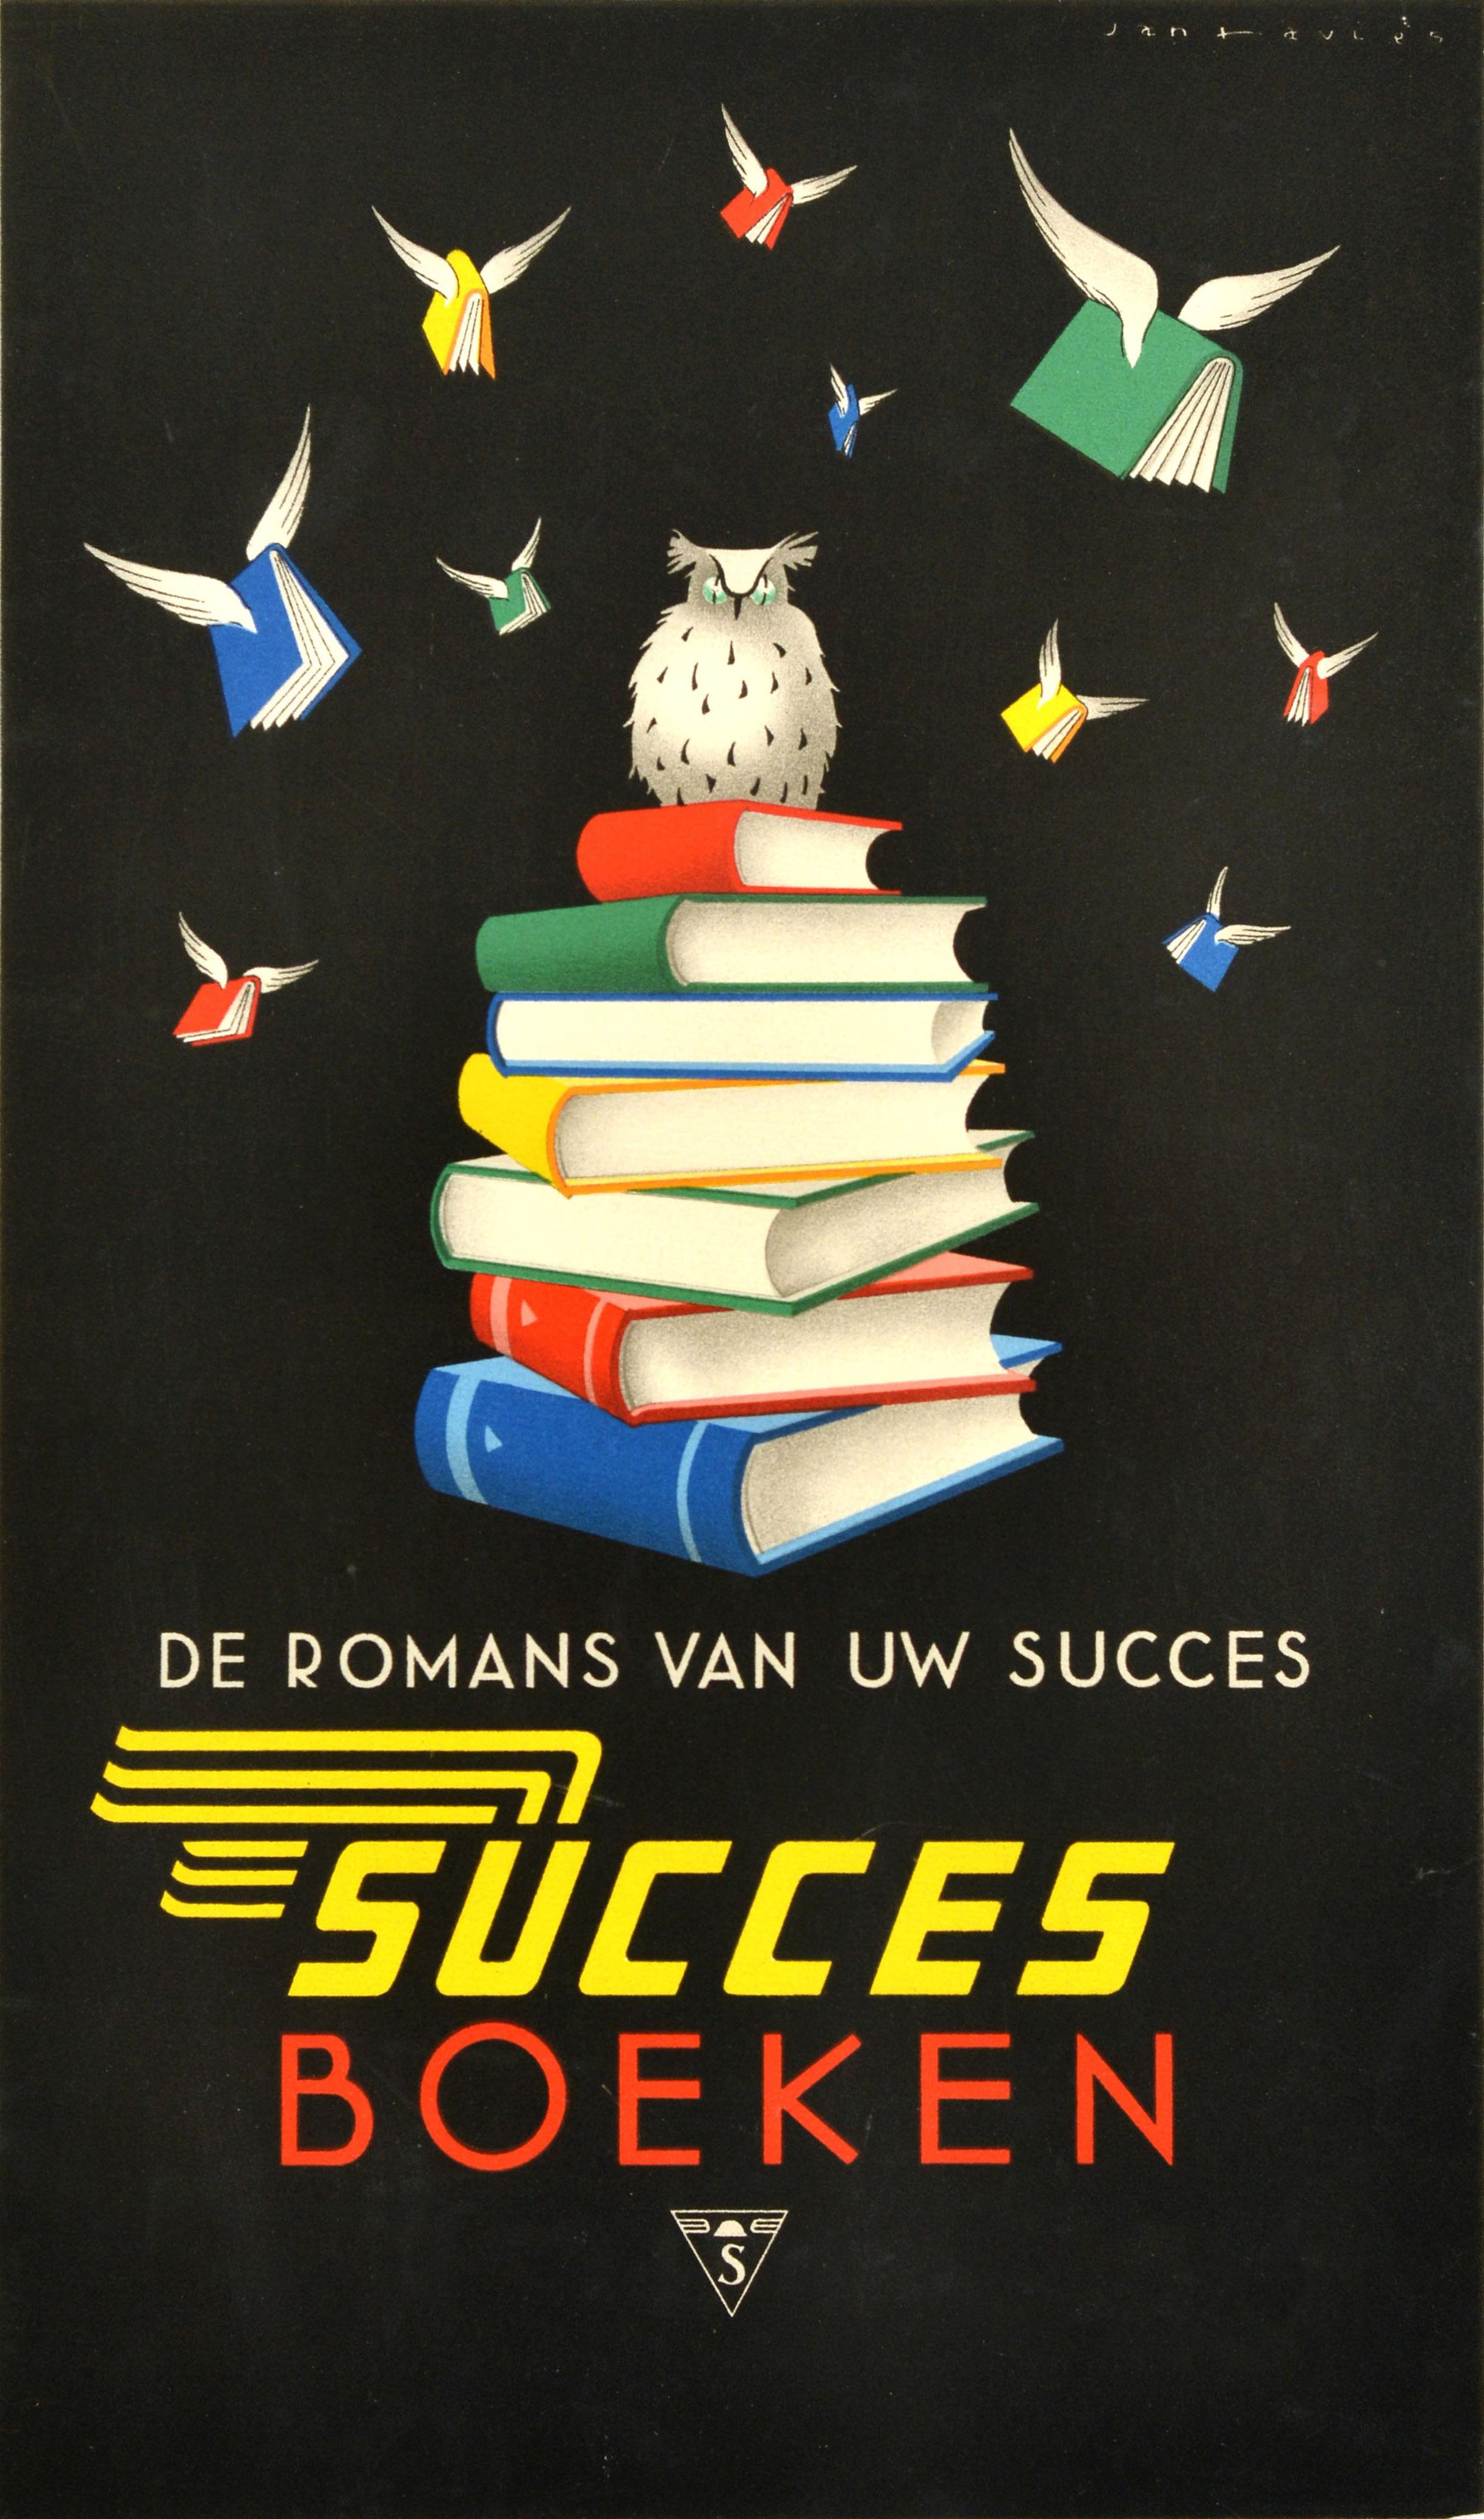 Print Unknown - Affiche publicitaire originale d'un éditeur de livres vintage, succès livres, hibou lecture art